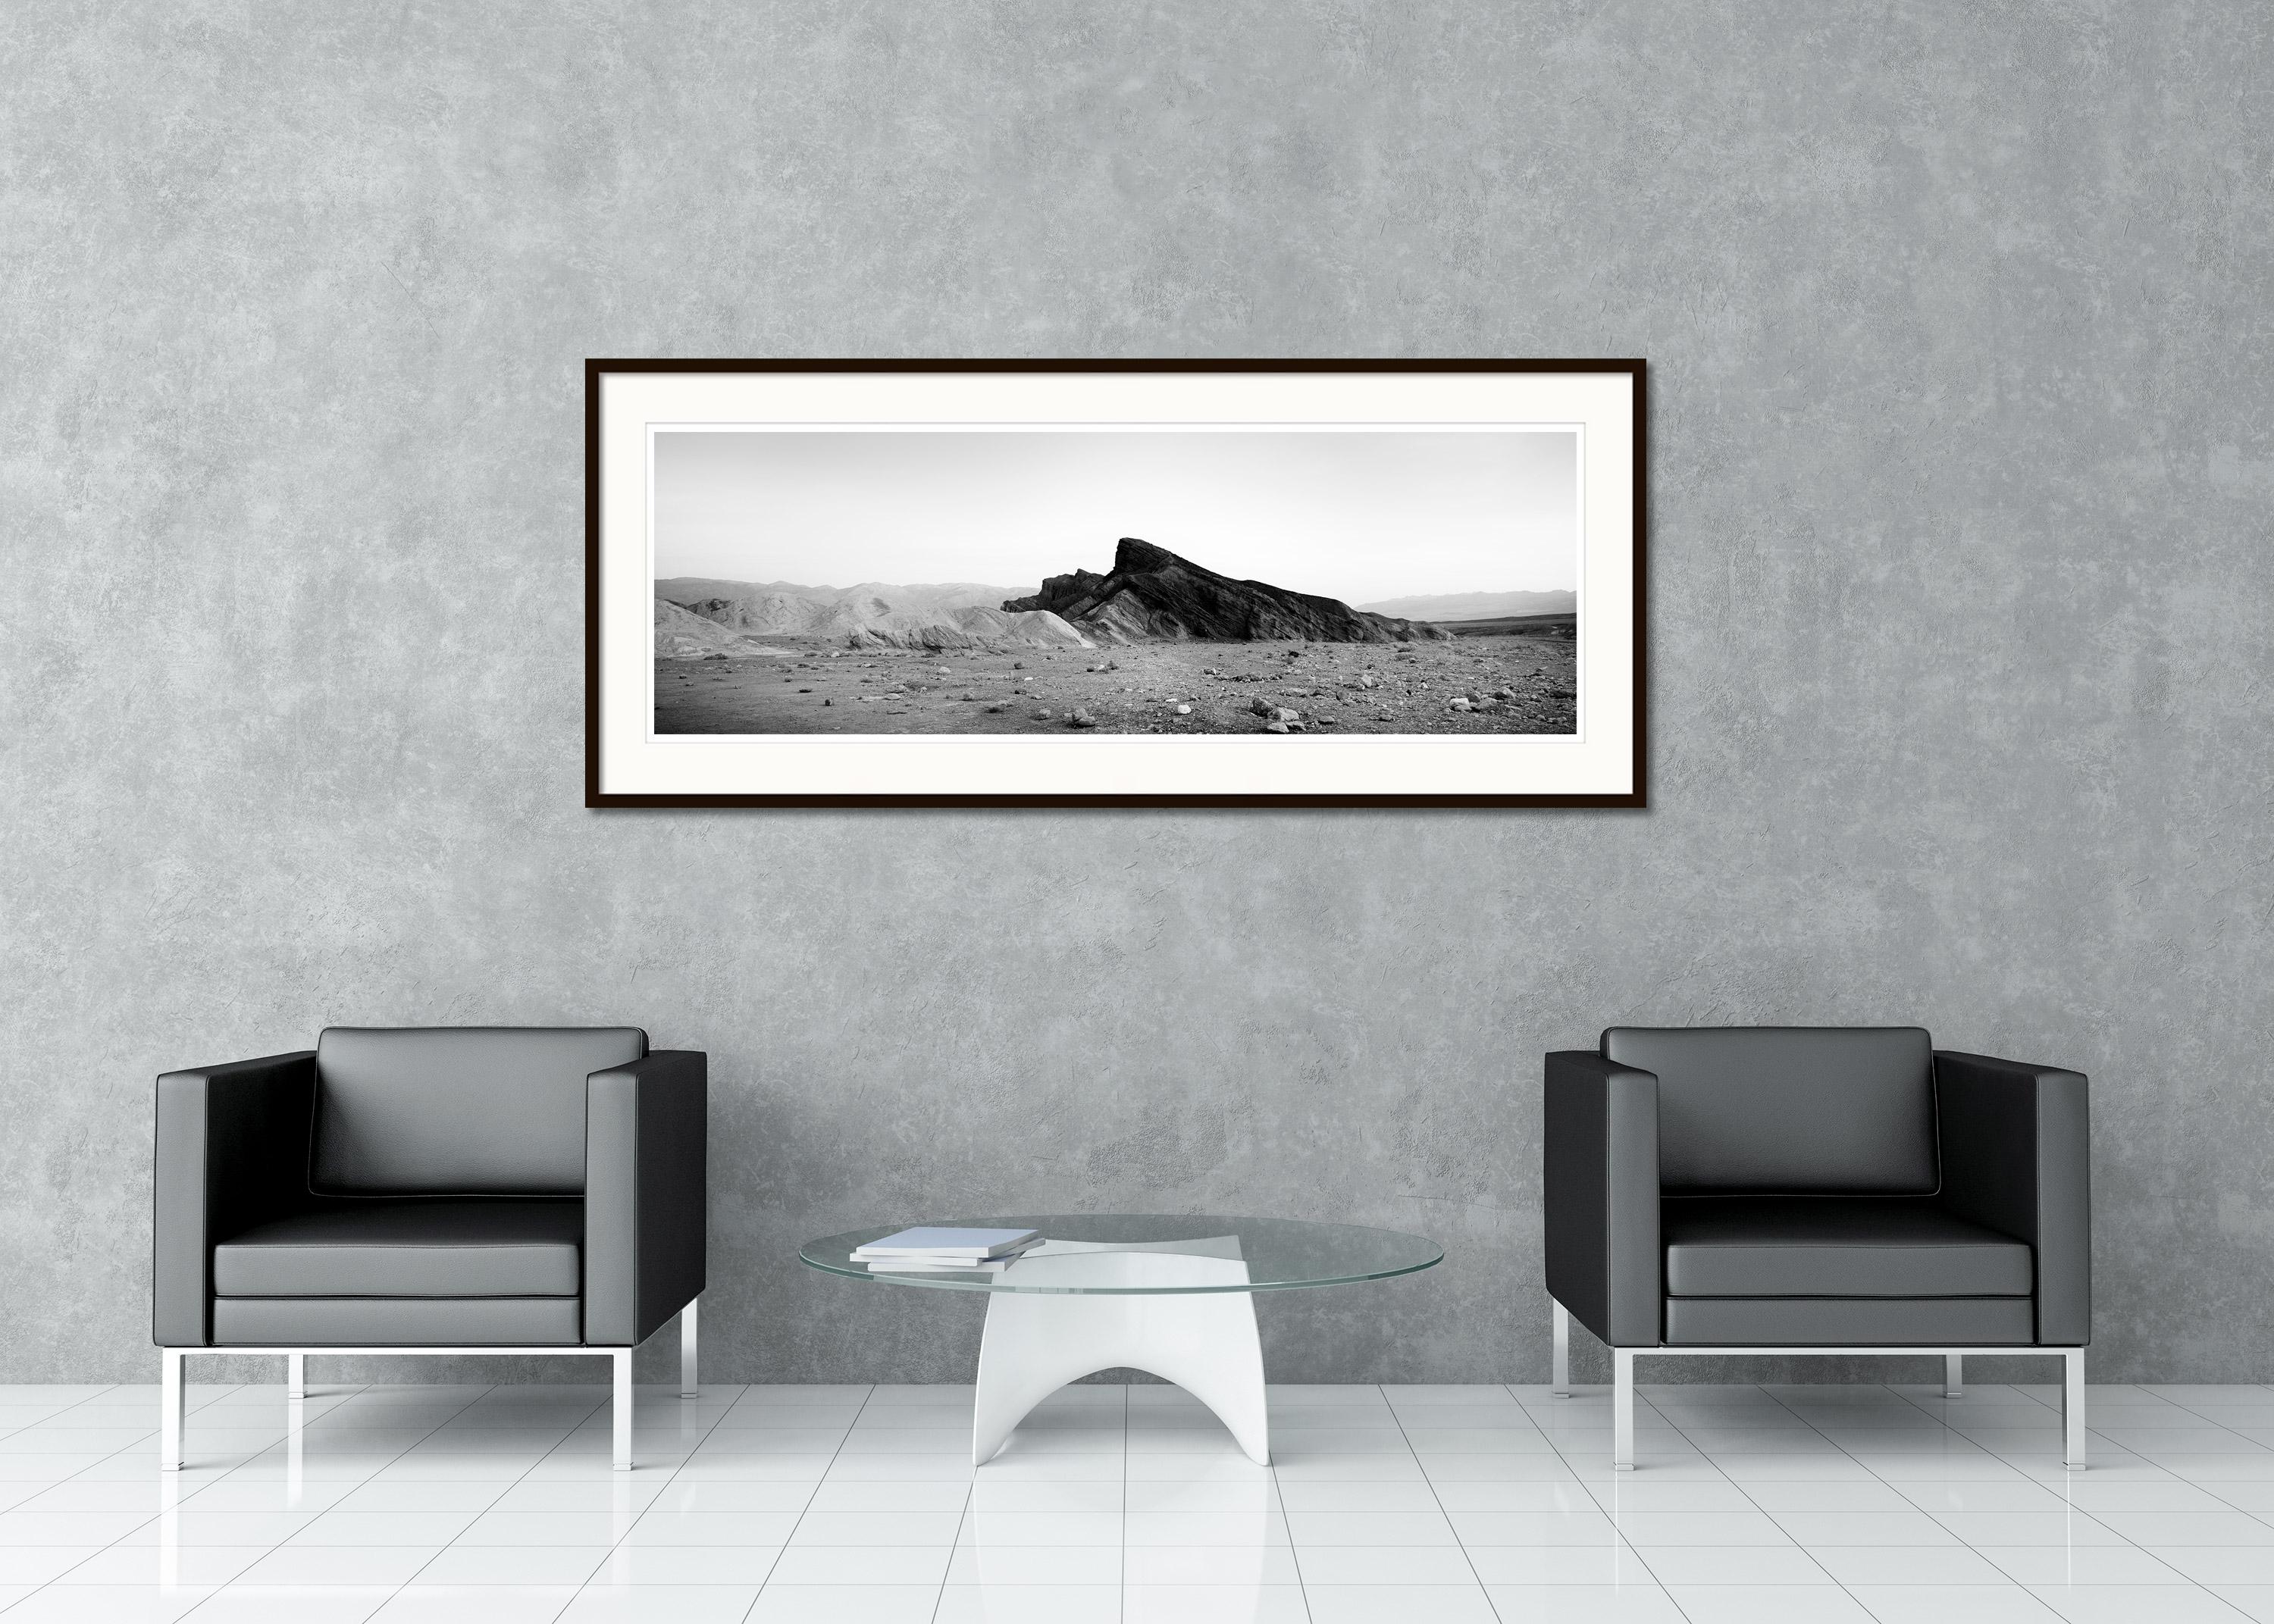 Schwarze und weiße Fine Art Landschaftsfotografie. Felsformation in der Wüste von Death Valley, Kalifornien, USA. Pigmenttintendruck, Auflage 9, signiert, betitelt, datiert und nummeriert vom Künstler. Mit Echtheitszertifikat. Bedruckt mit einem 4